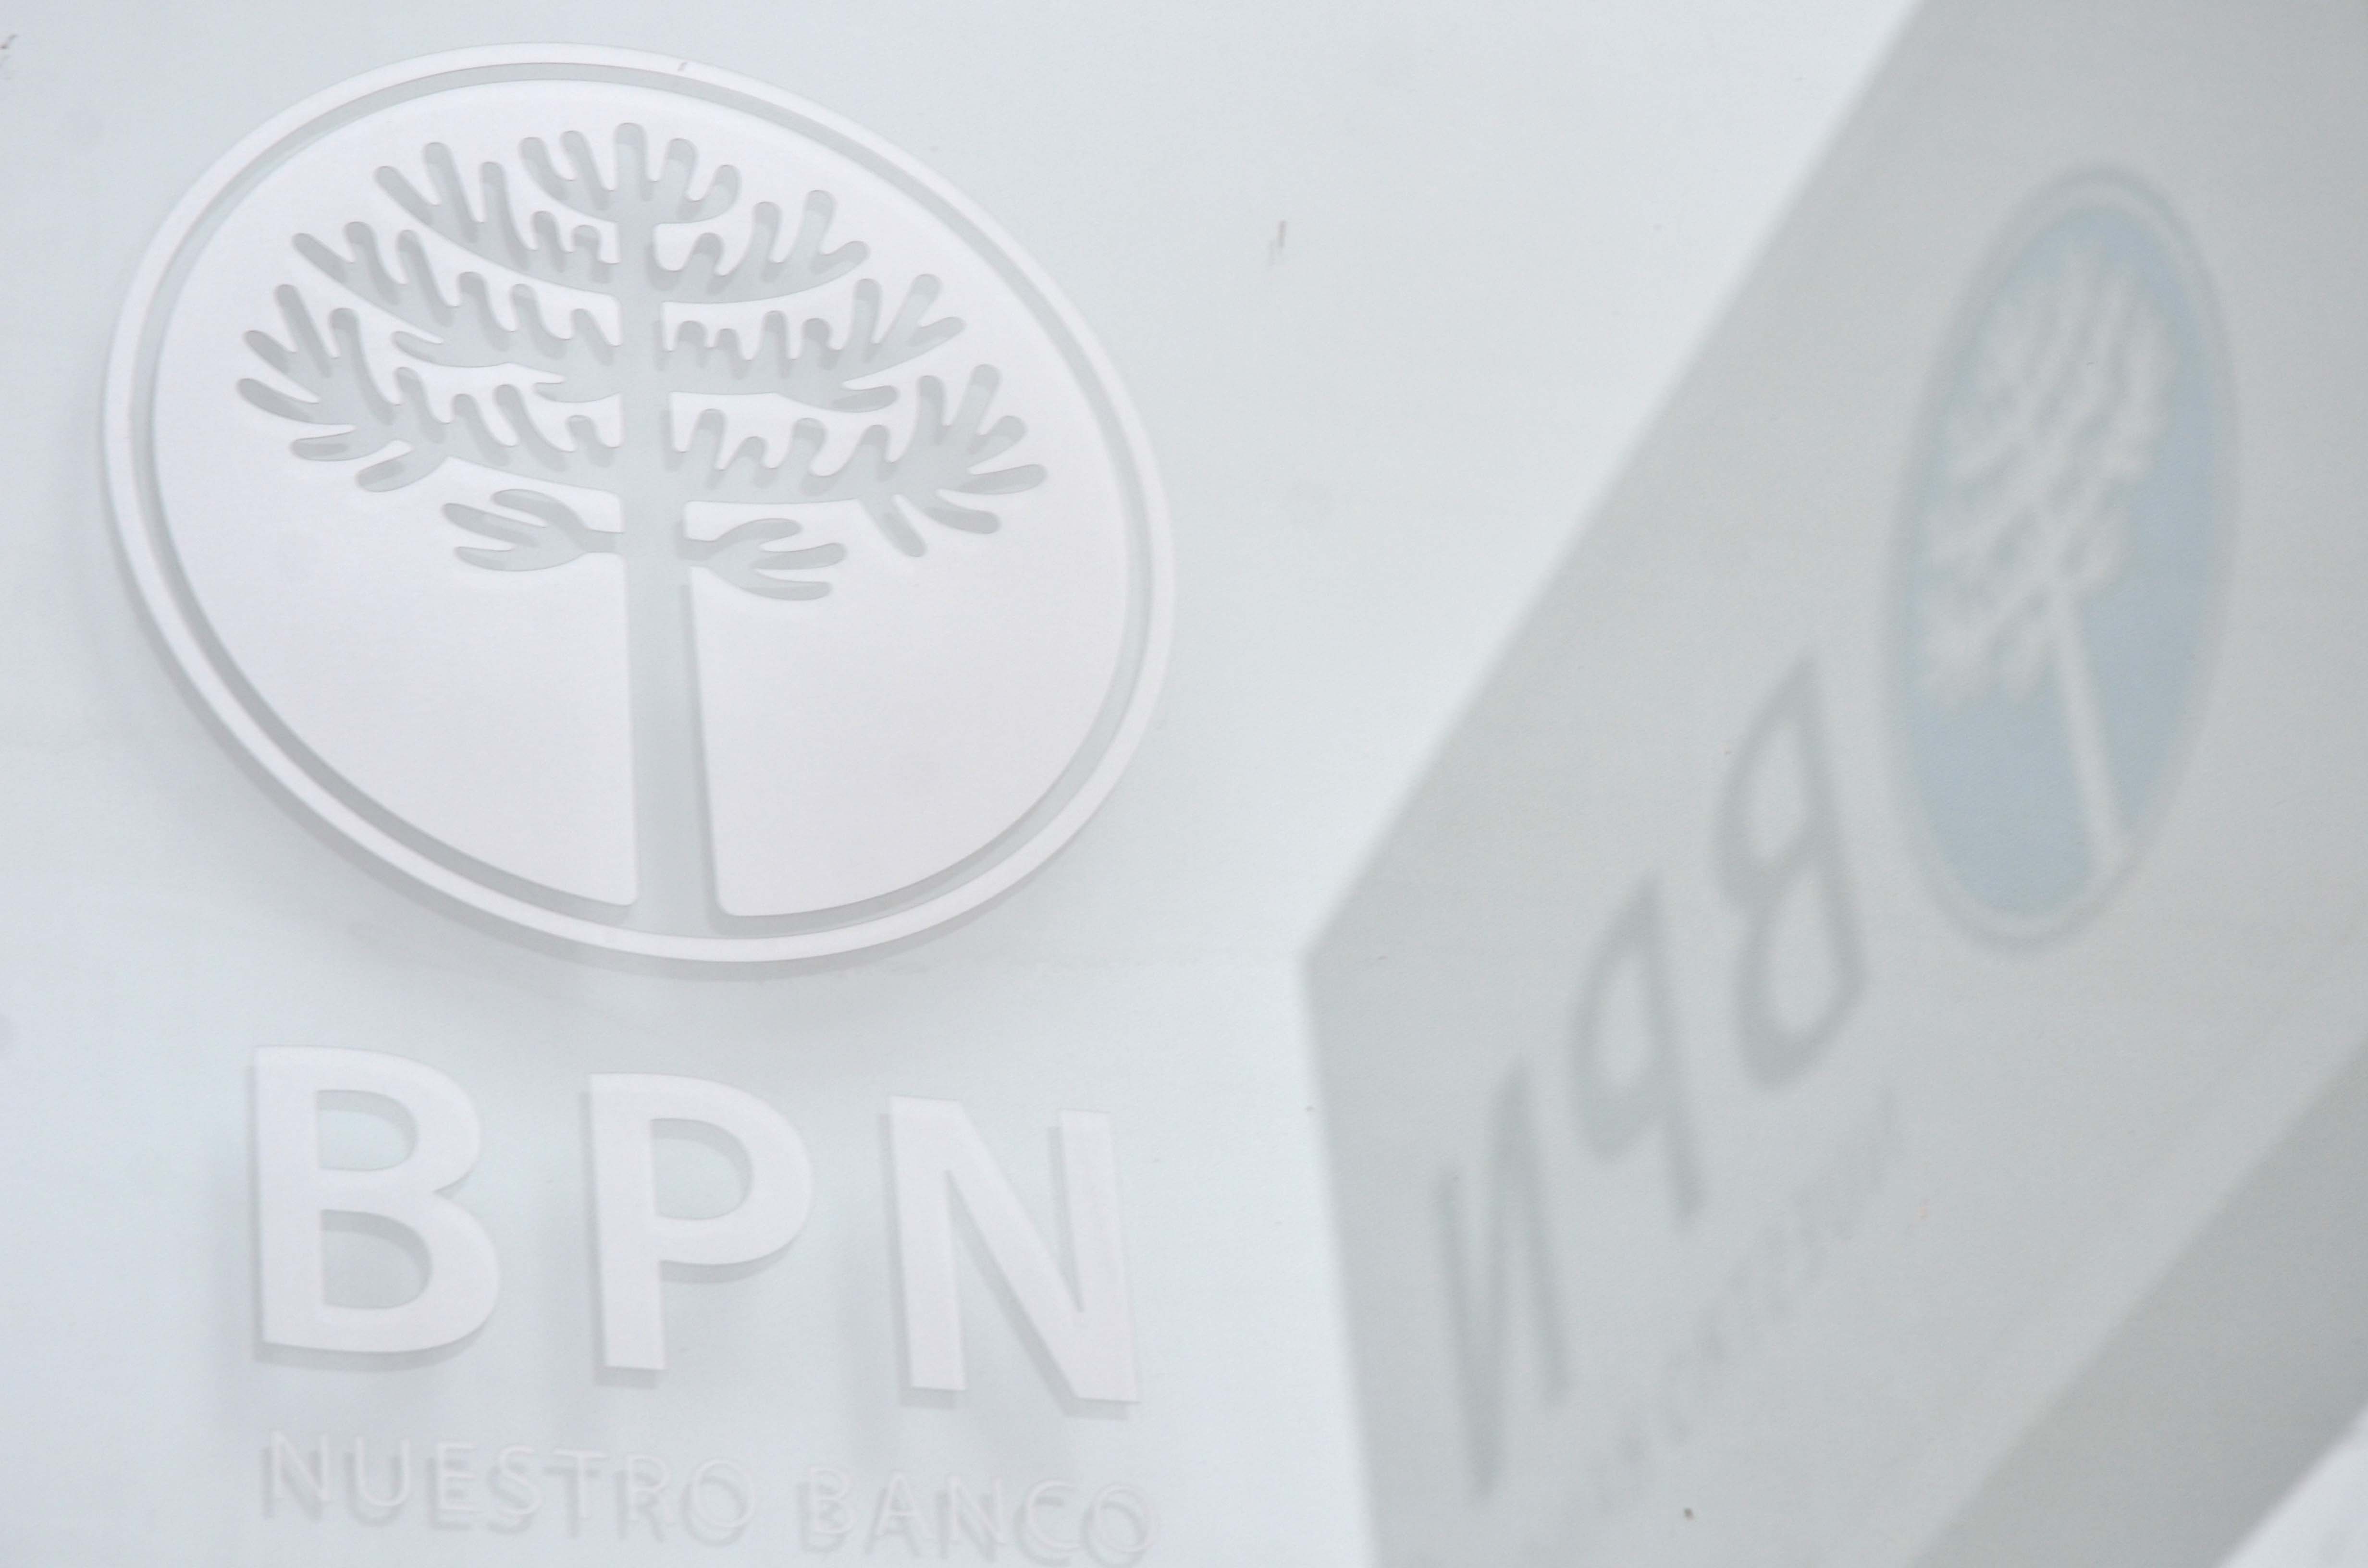 El BPN emitirá y distribuirá la tarjeta. Foto: Archivo Matías Subat